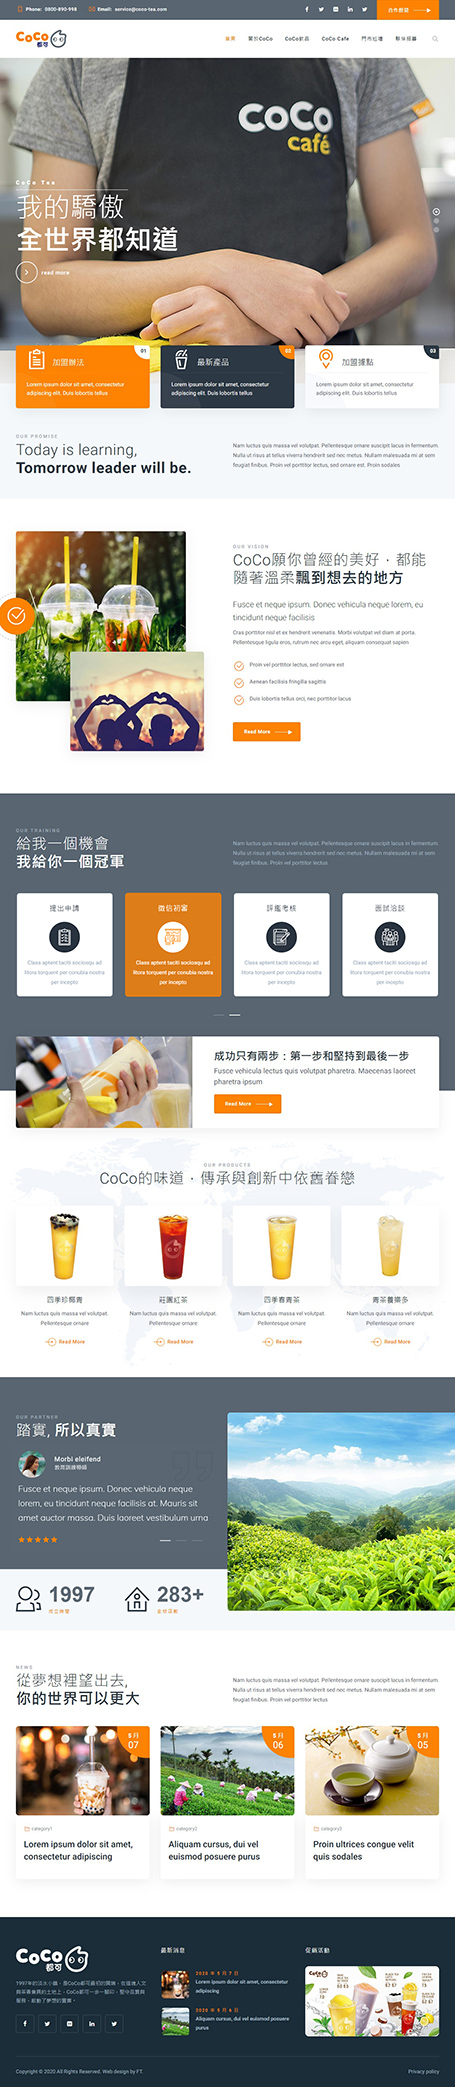 Coco網站設計,Coco都可,Coco,手搖杯網頁設計,網站設計,億可國際,網站設計